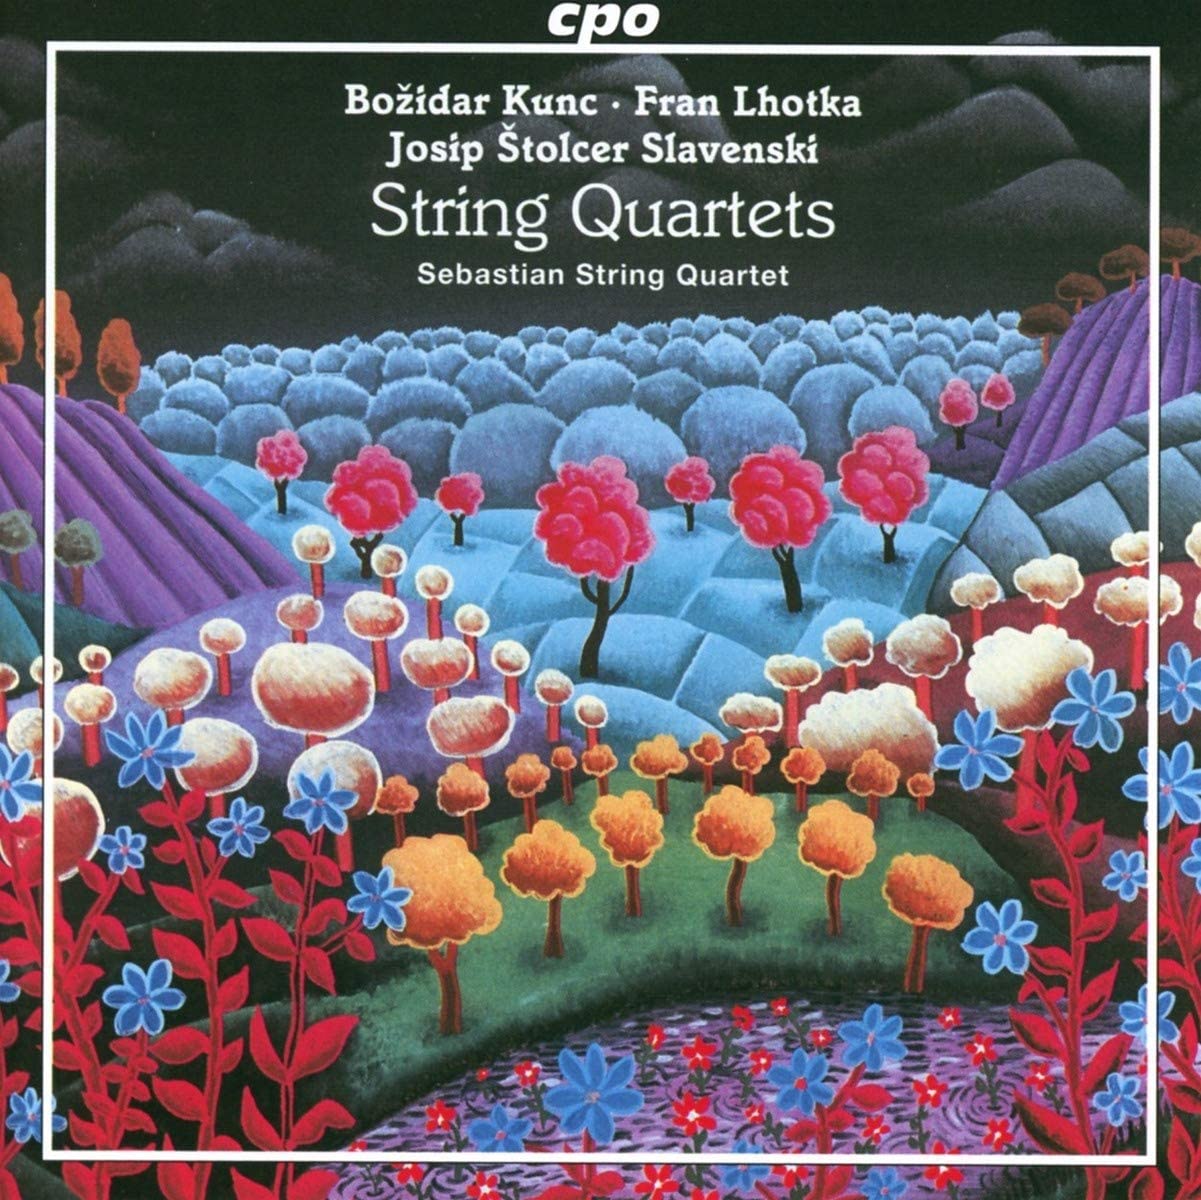 CPO555 297-2. KUNC; LHOTKA; SLAVENSKI String Quartets